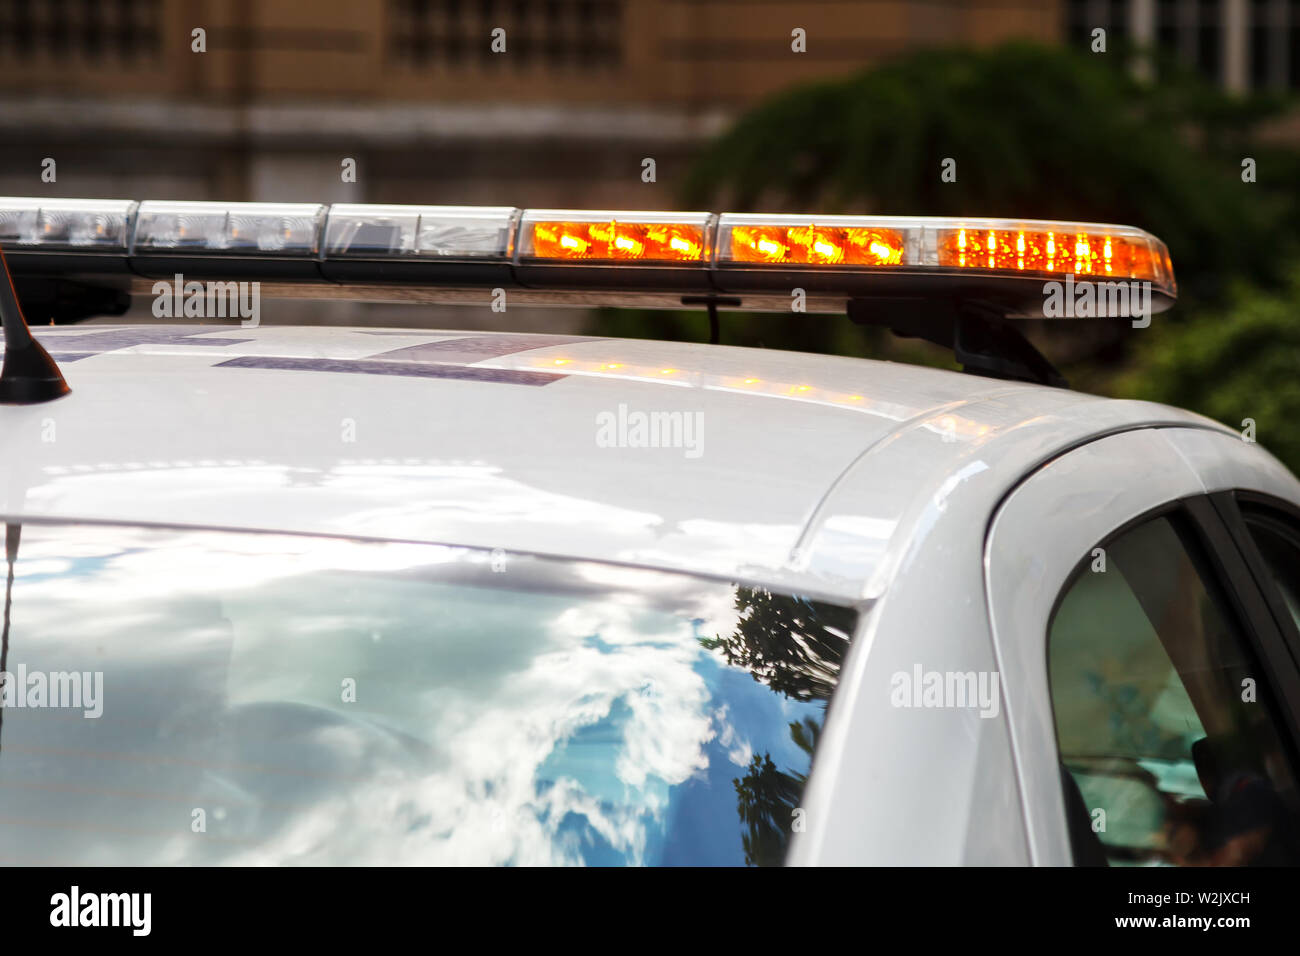 Weiße Polizei Auto mit einem Stroboskop Licht auf dem Dach, die orange  blinkt, um Aufmerksamkeit zu erregen Stockfotografie - Alamy